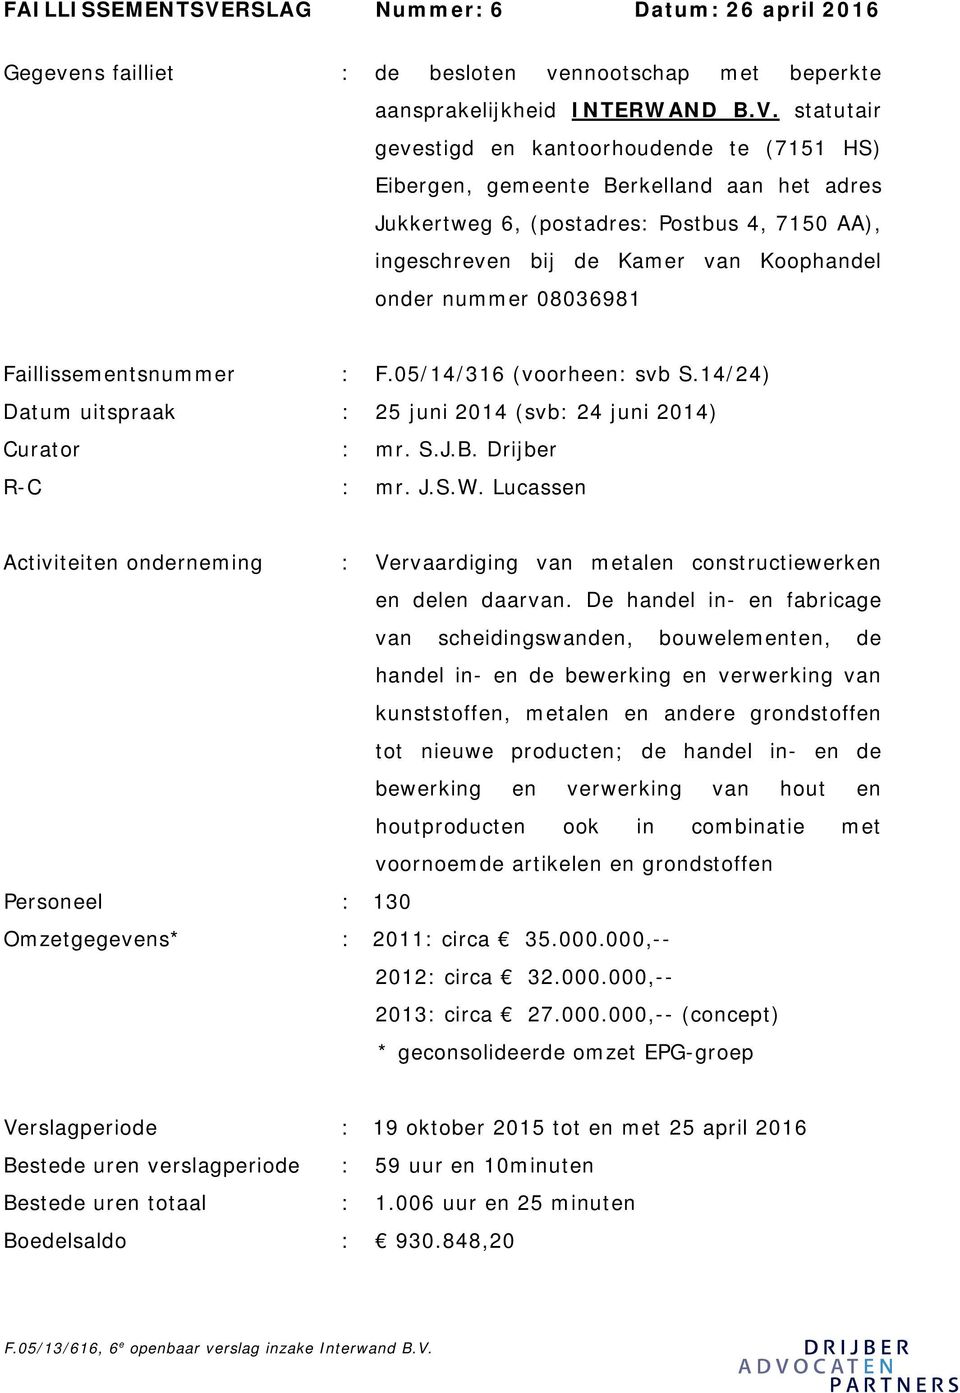 statutair gevestigd en kantoorhoudende te (7151 HS) Eibergen, gemeente Berkelland aan het adres Jukkertweg 6, (postadres: Postbus 4, 7150 AA), ingeschreven bij de Kamer van Koophandel onder nummer